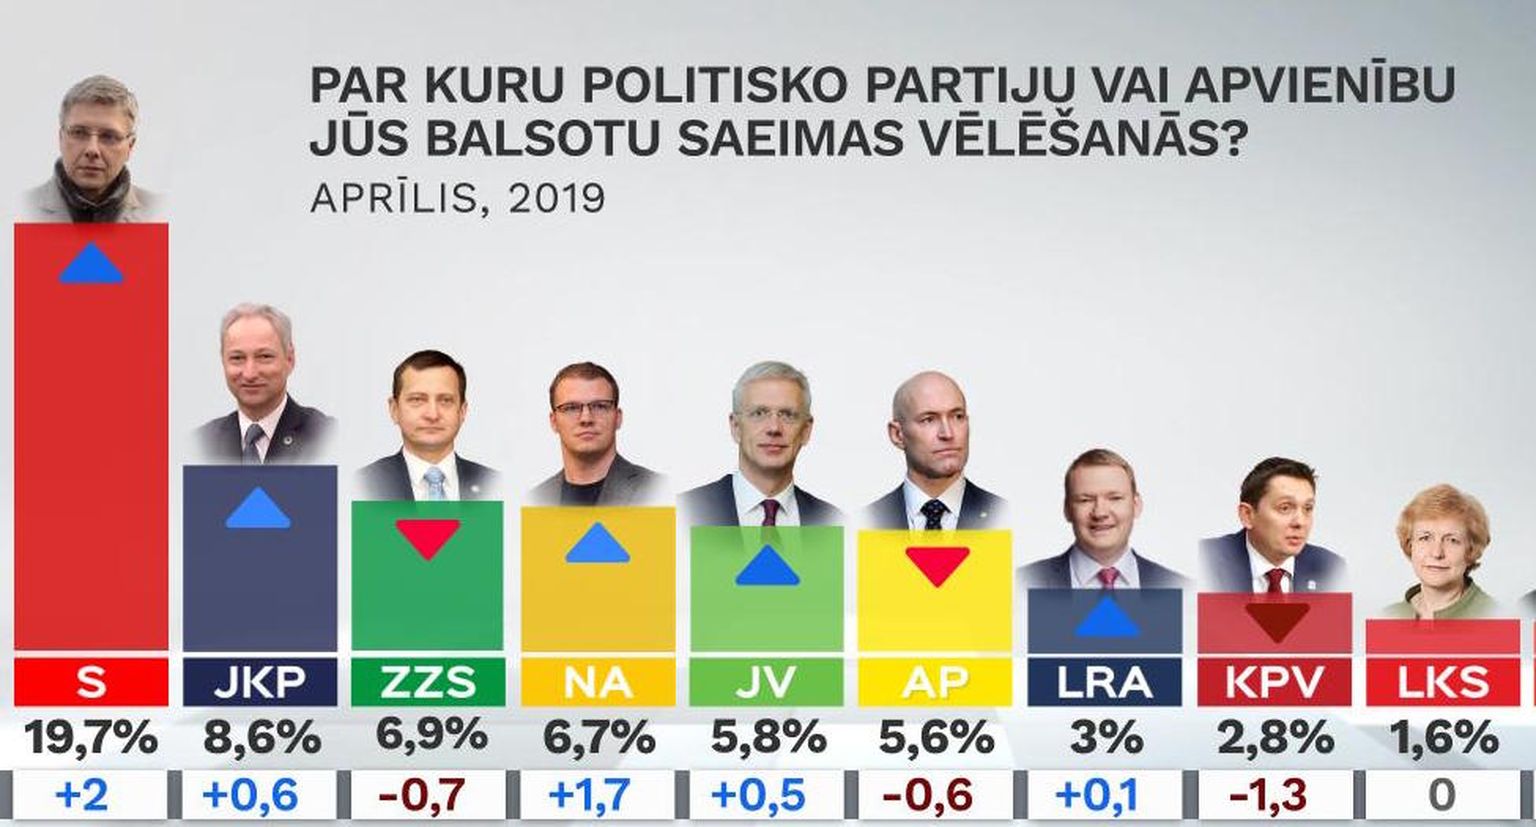 Рейтинги партий в апреле 2019 года.